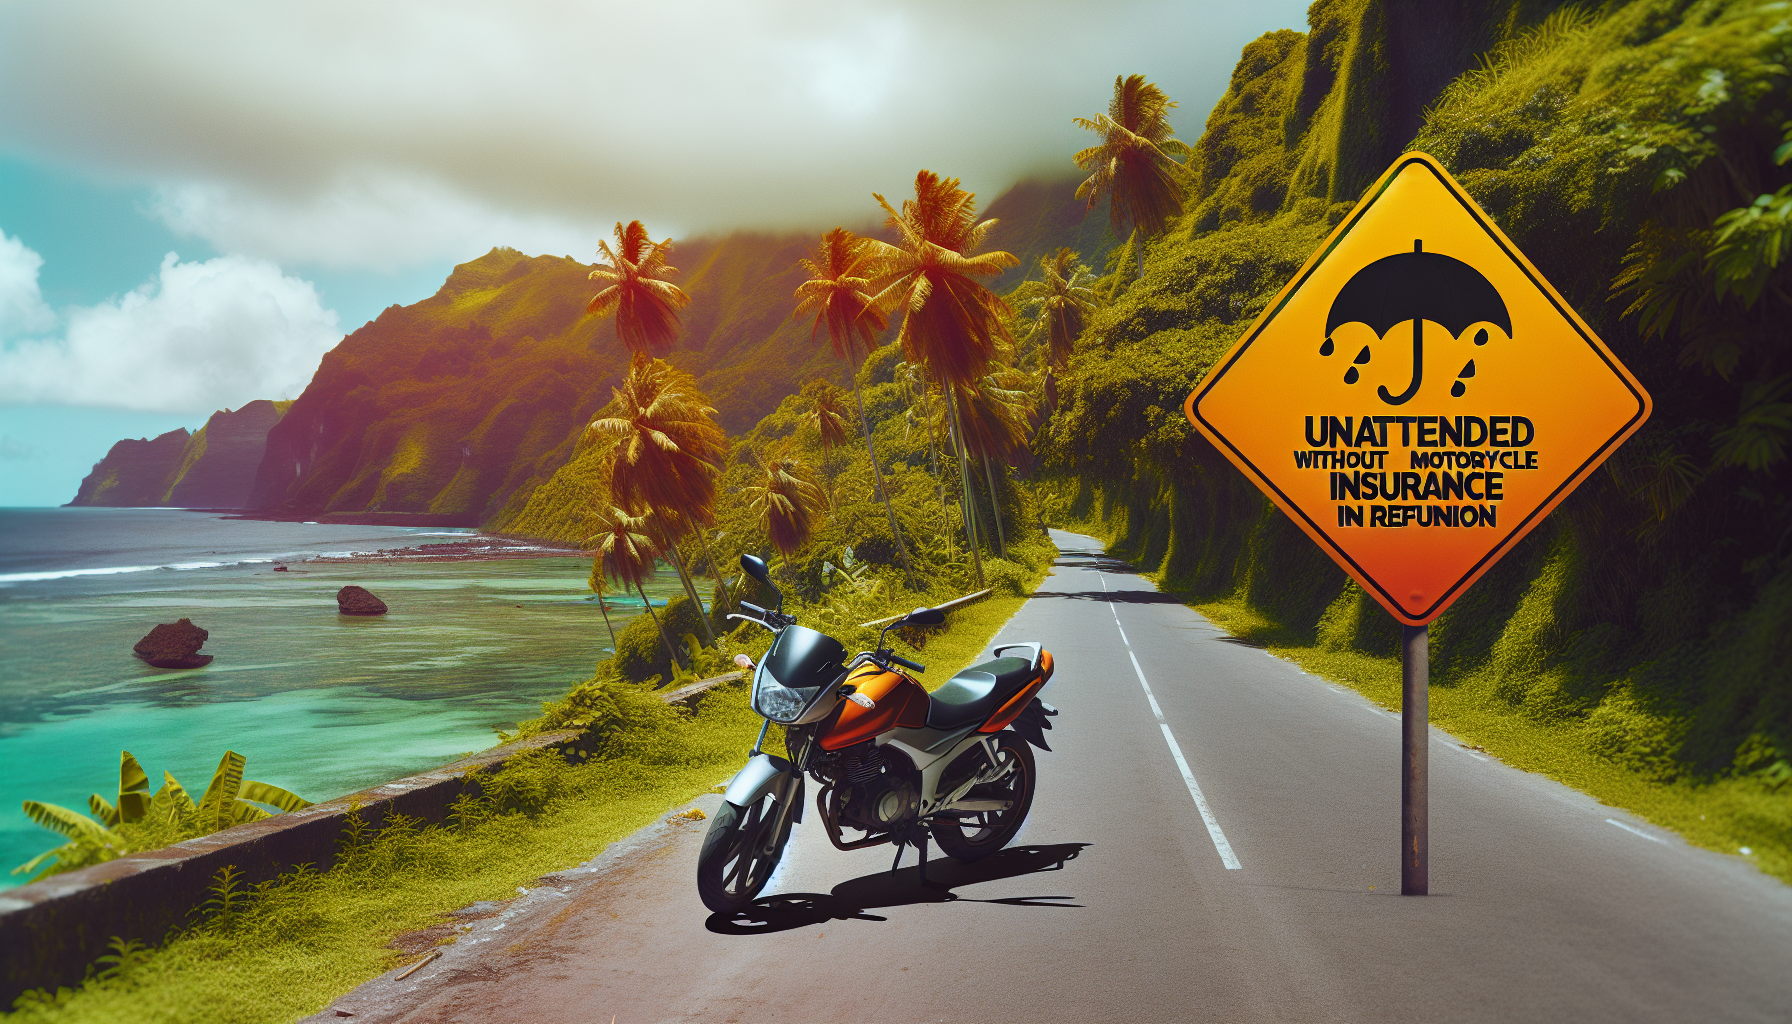 découvrez les risques encourus en cas de conduite sans assurance moto à la réunion. protégez-vous convenablement avec une assurance moto adaptée à vos besoins.